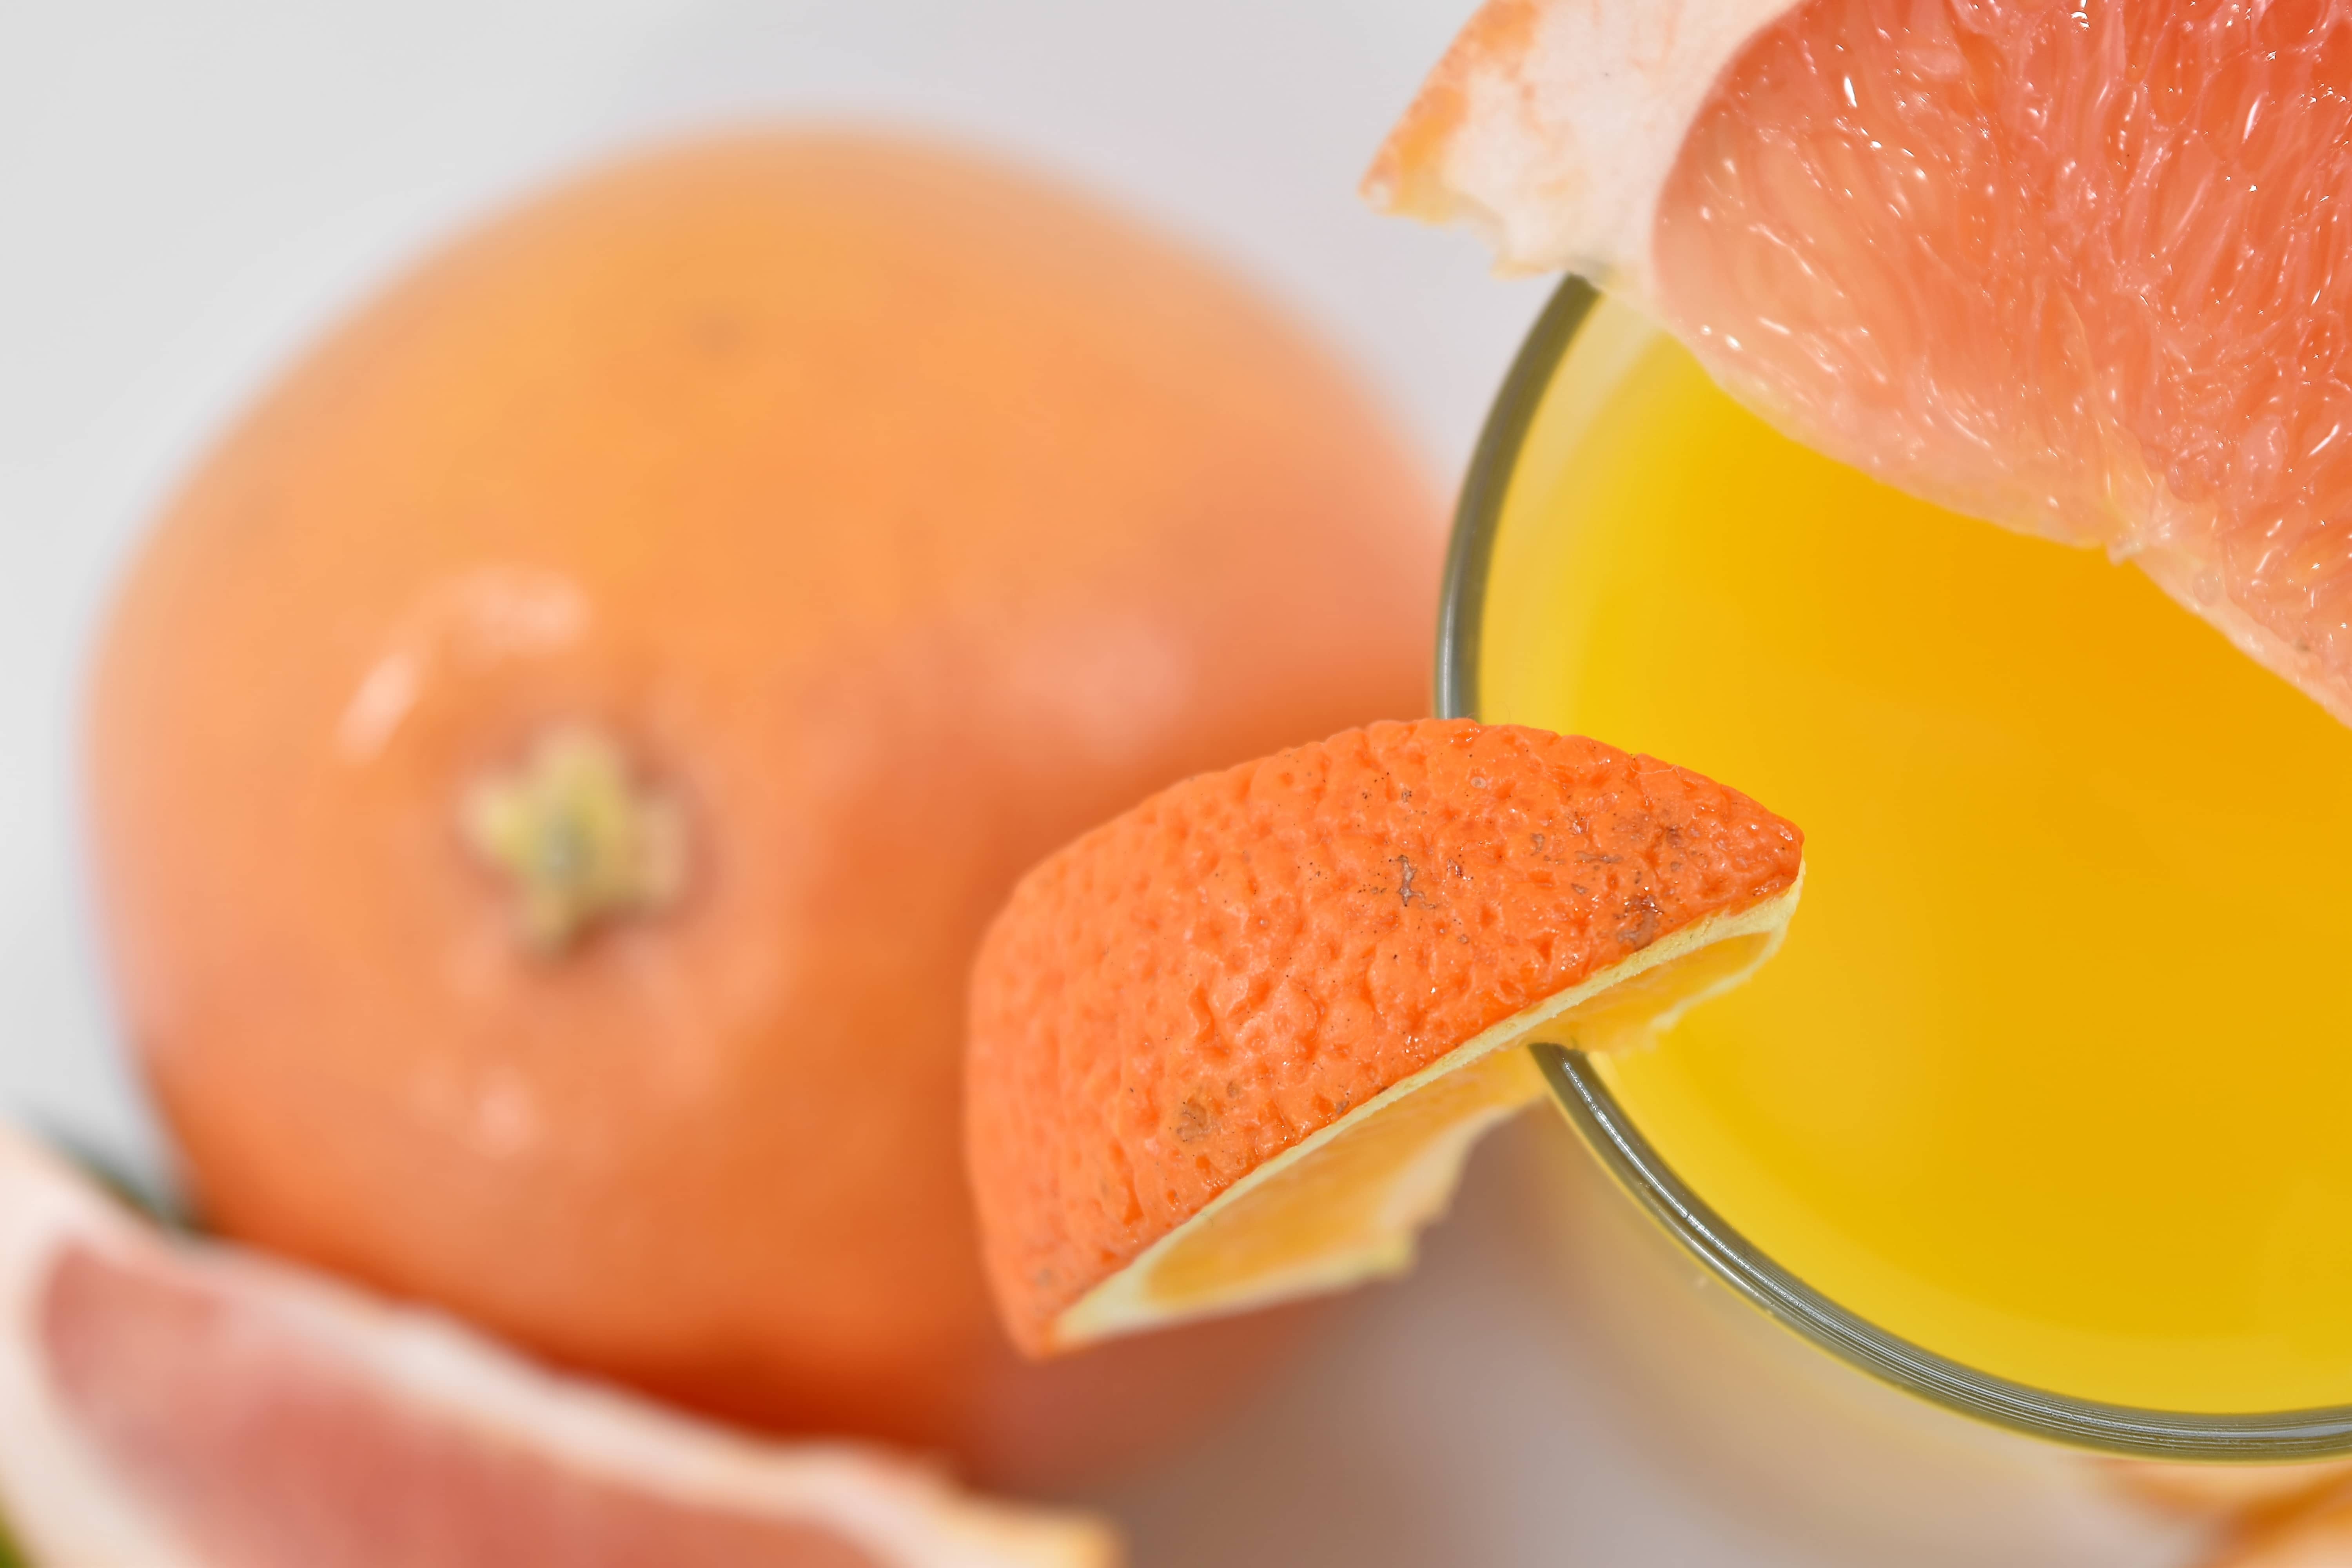 Orange vitamin. Мандариновый сок. Коктейль в апельсиновой кожуре. Сочные мандарины и сок. Коктейль с мандарином.